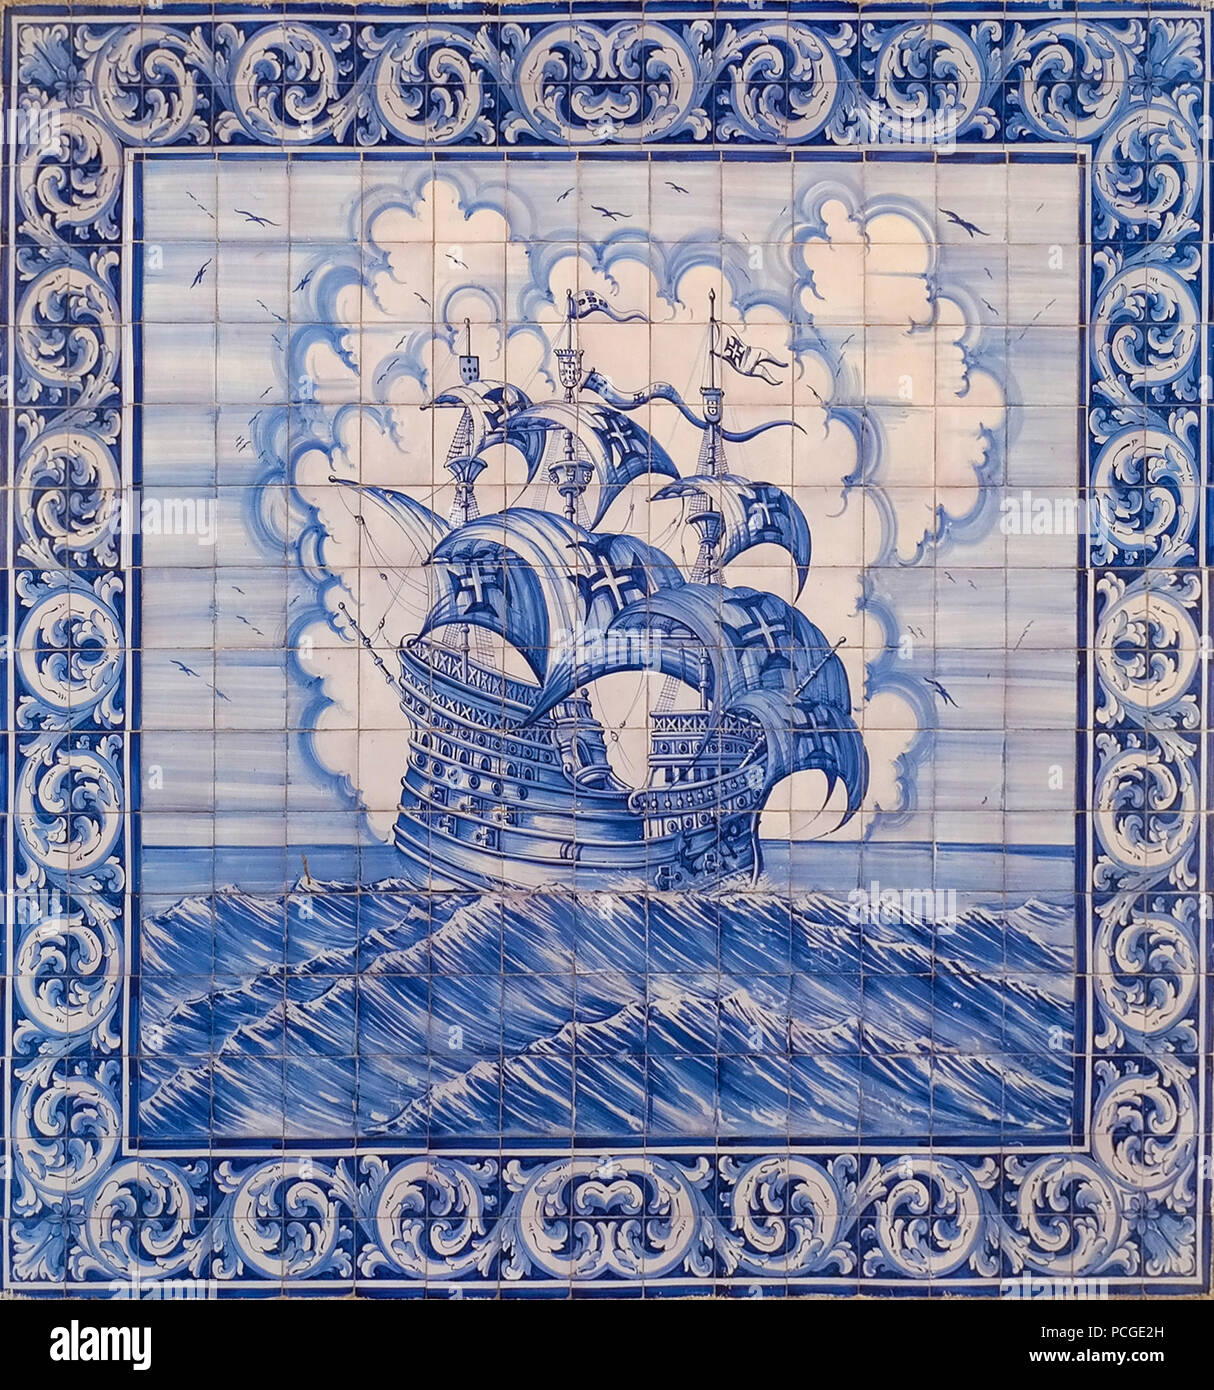 Lisbonne. Carreaux portugais typique (azulejos) montrant un navire à voiles caravella comme a été utilisé par les découvreurs dans le 15.-16. siècle Banque D'Images